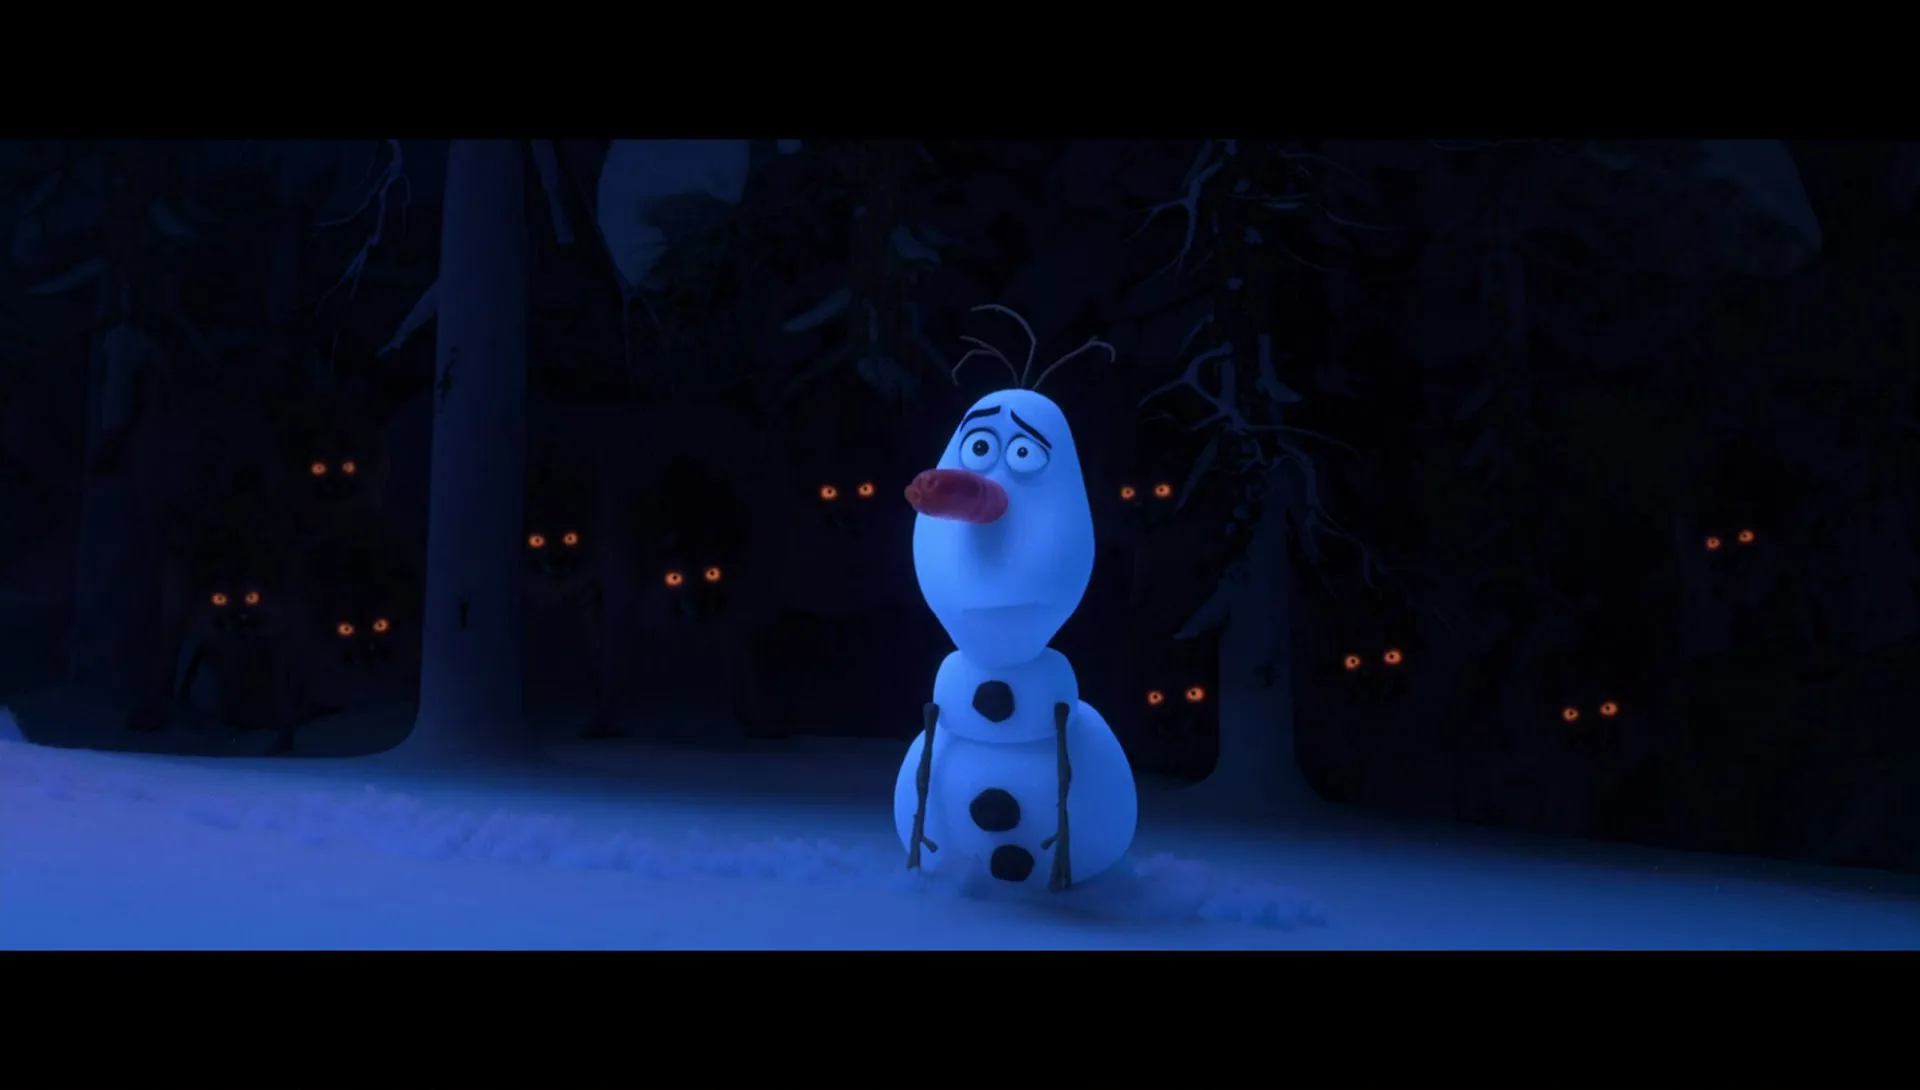 Regardez La Reine des neiges : L'Aventure givrée d'Olaf (Olaf's Frozen  Adventure)